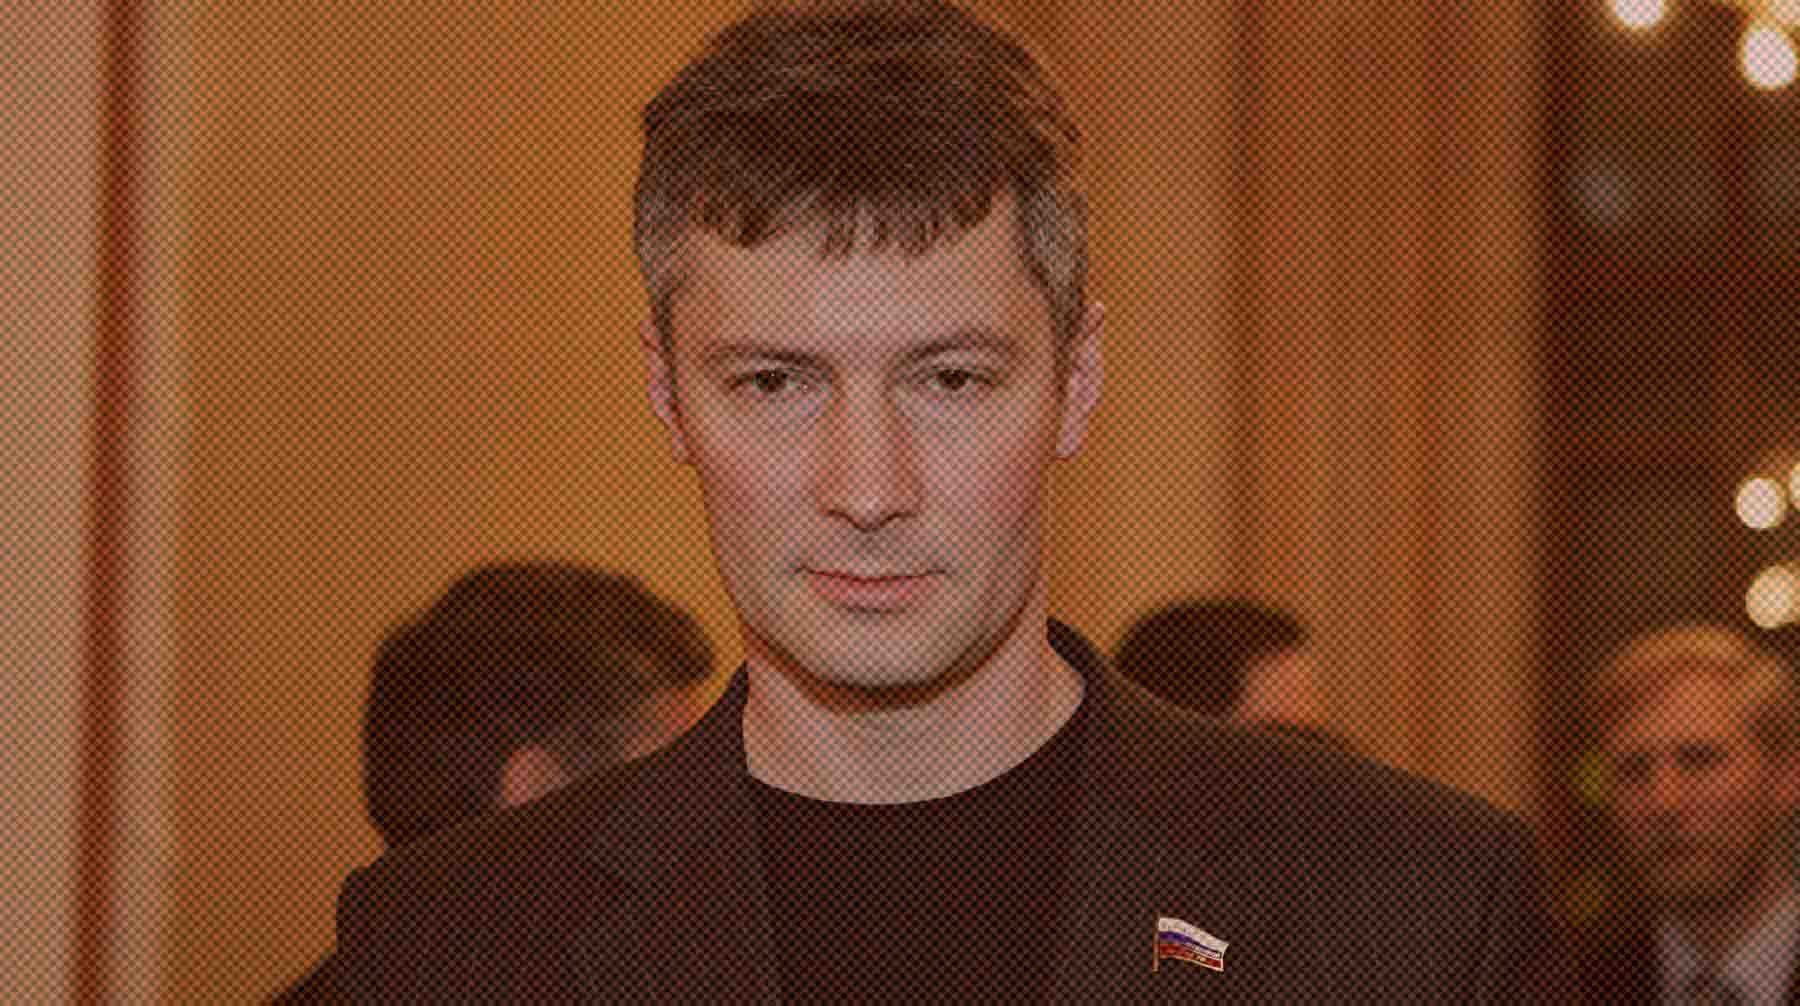 Dailystorm - Полиция задержала экс-мэра Екатеринбурга Ройзмана из-за репоста в соцсетях